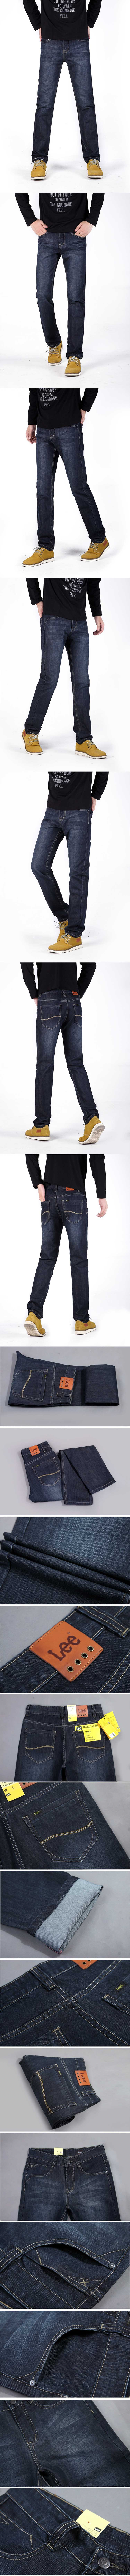 jual celana jeans pria panjang merk lee reguler fit, temukan koleksi celana jeans panjang pria terlengkap hanya di store.pakaianfashionpria.com